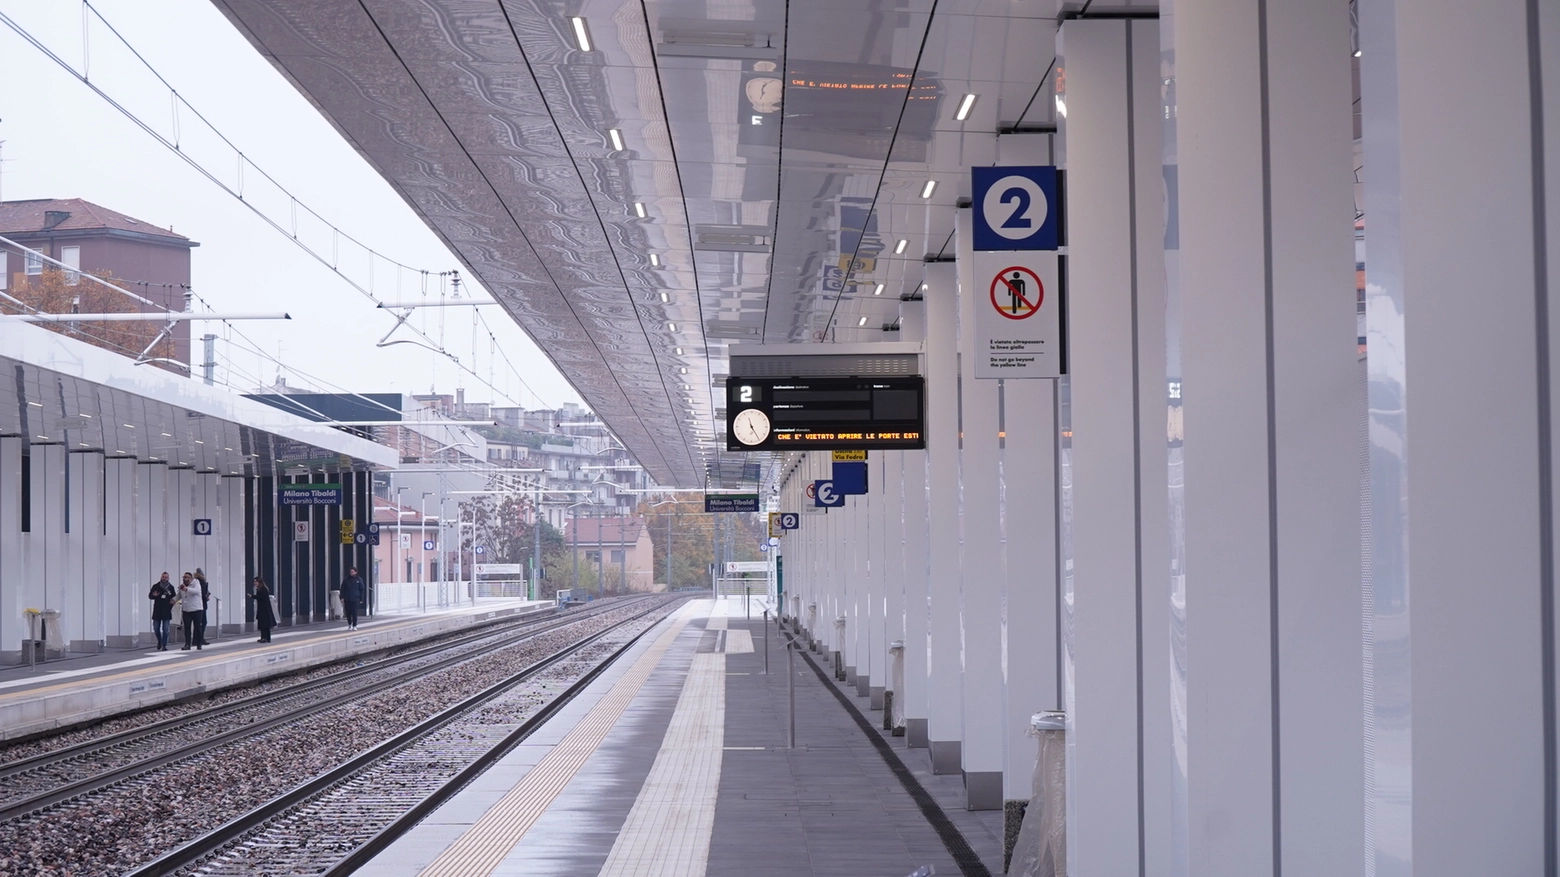 La nuova stazione ferroviaria Tibaldi-Università Bocconi